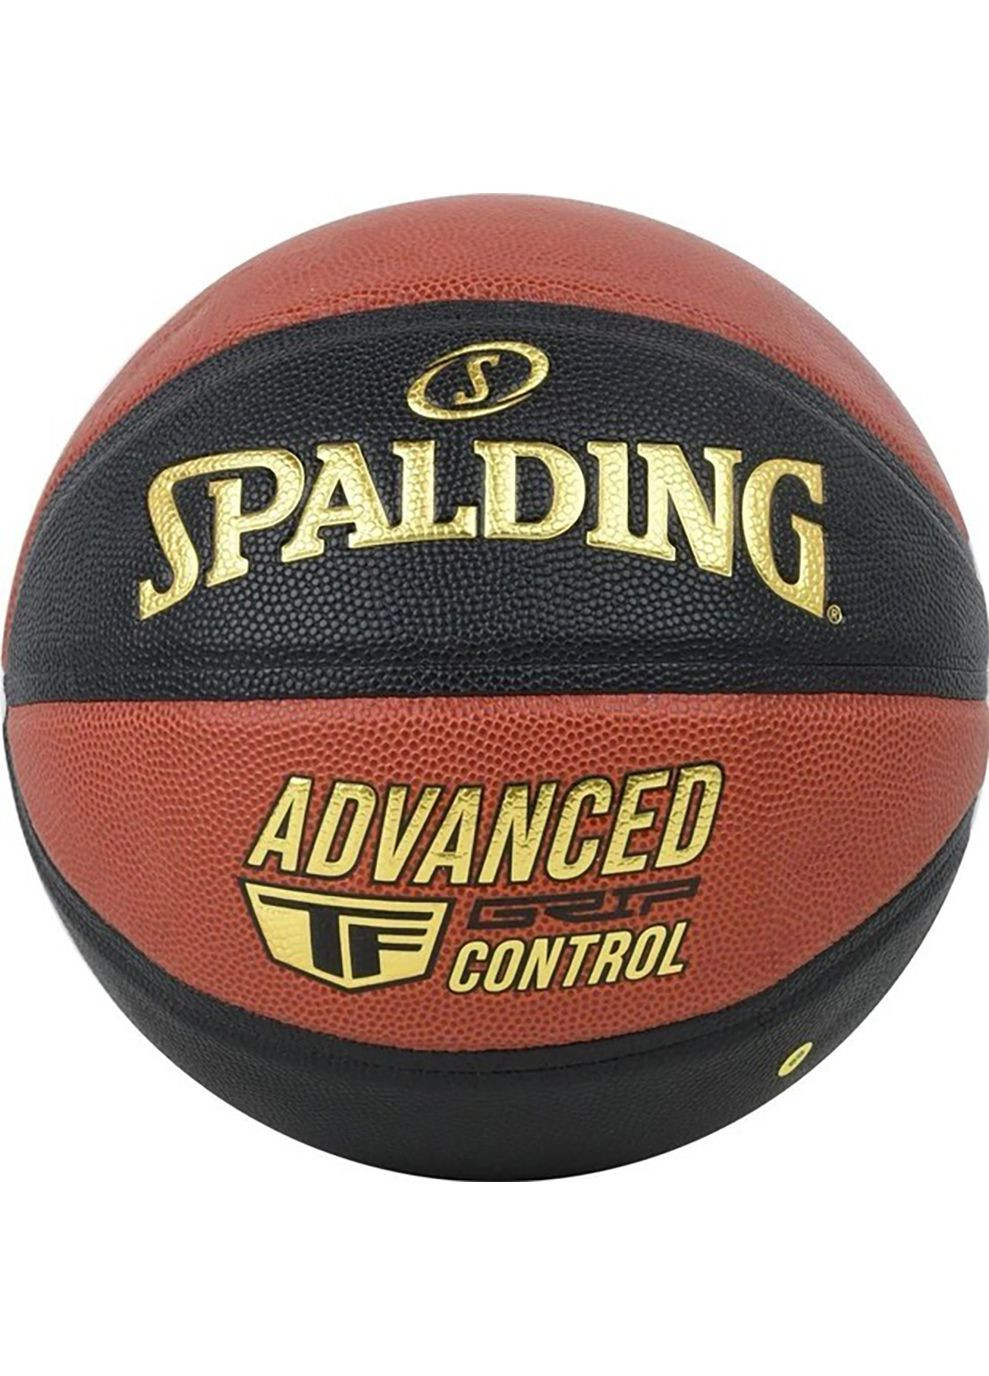 М'яч баскетбольний Advanced Grip Control чорний, помаранчевий Уні 7 Spalding (268833525)